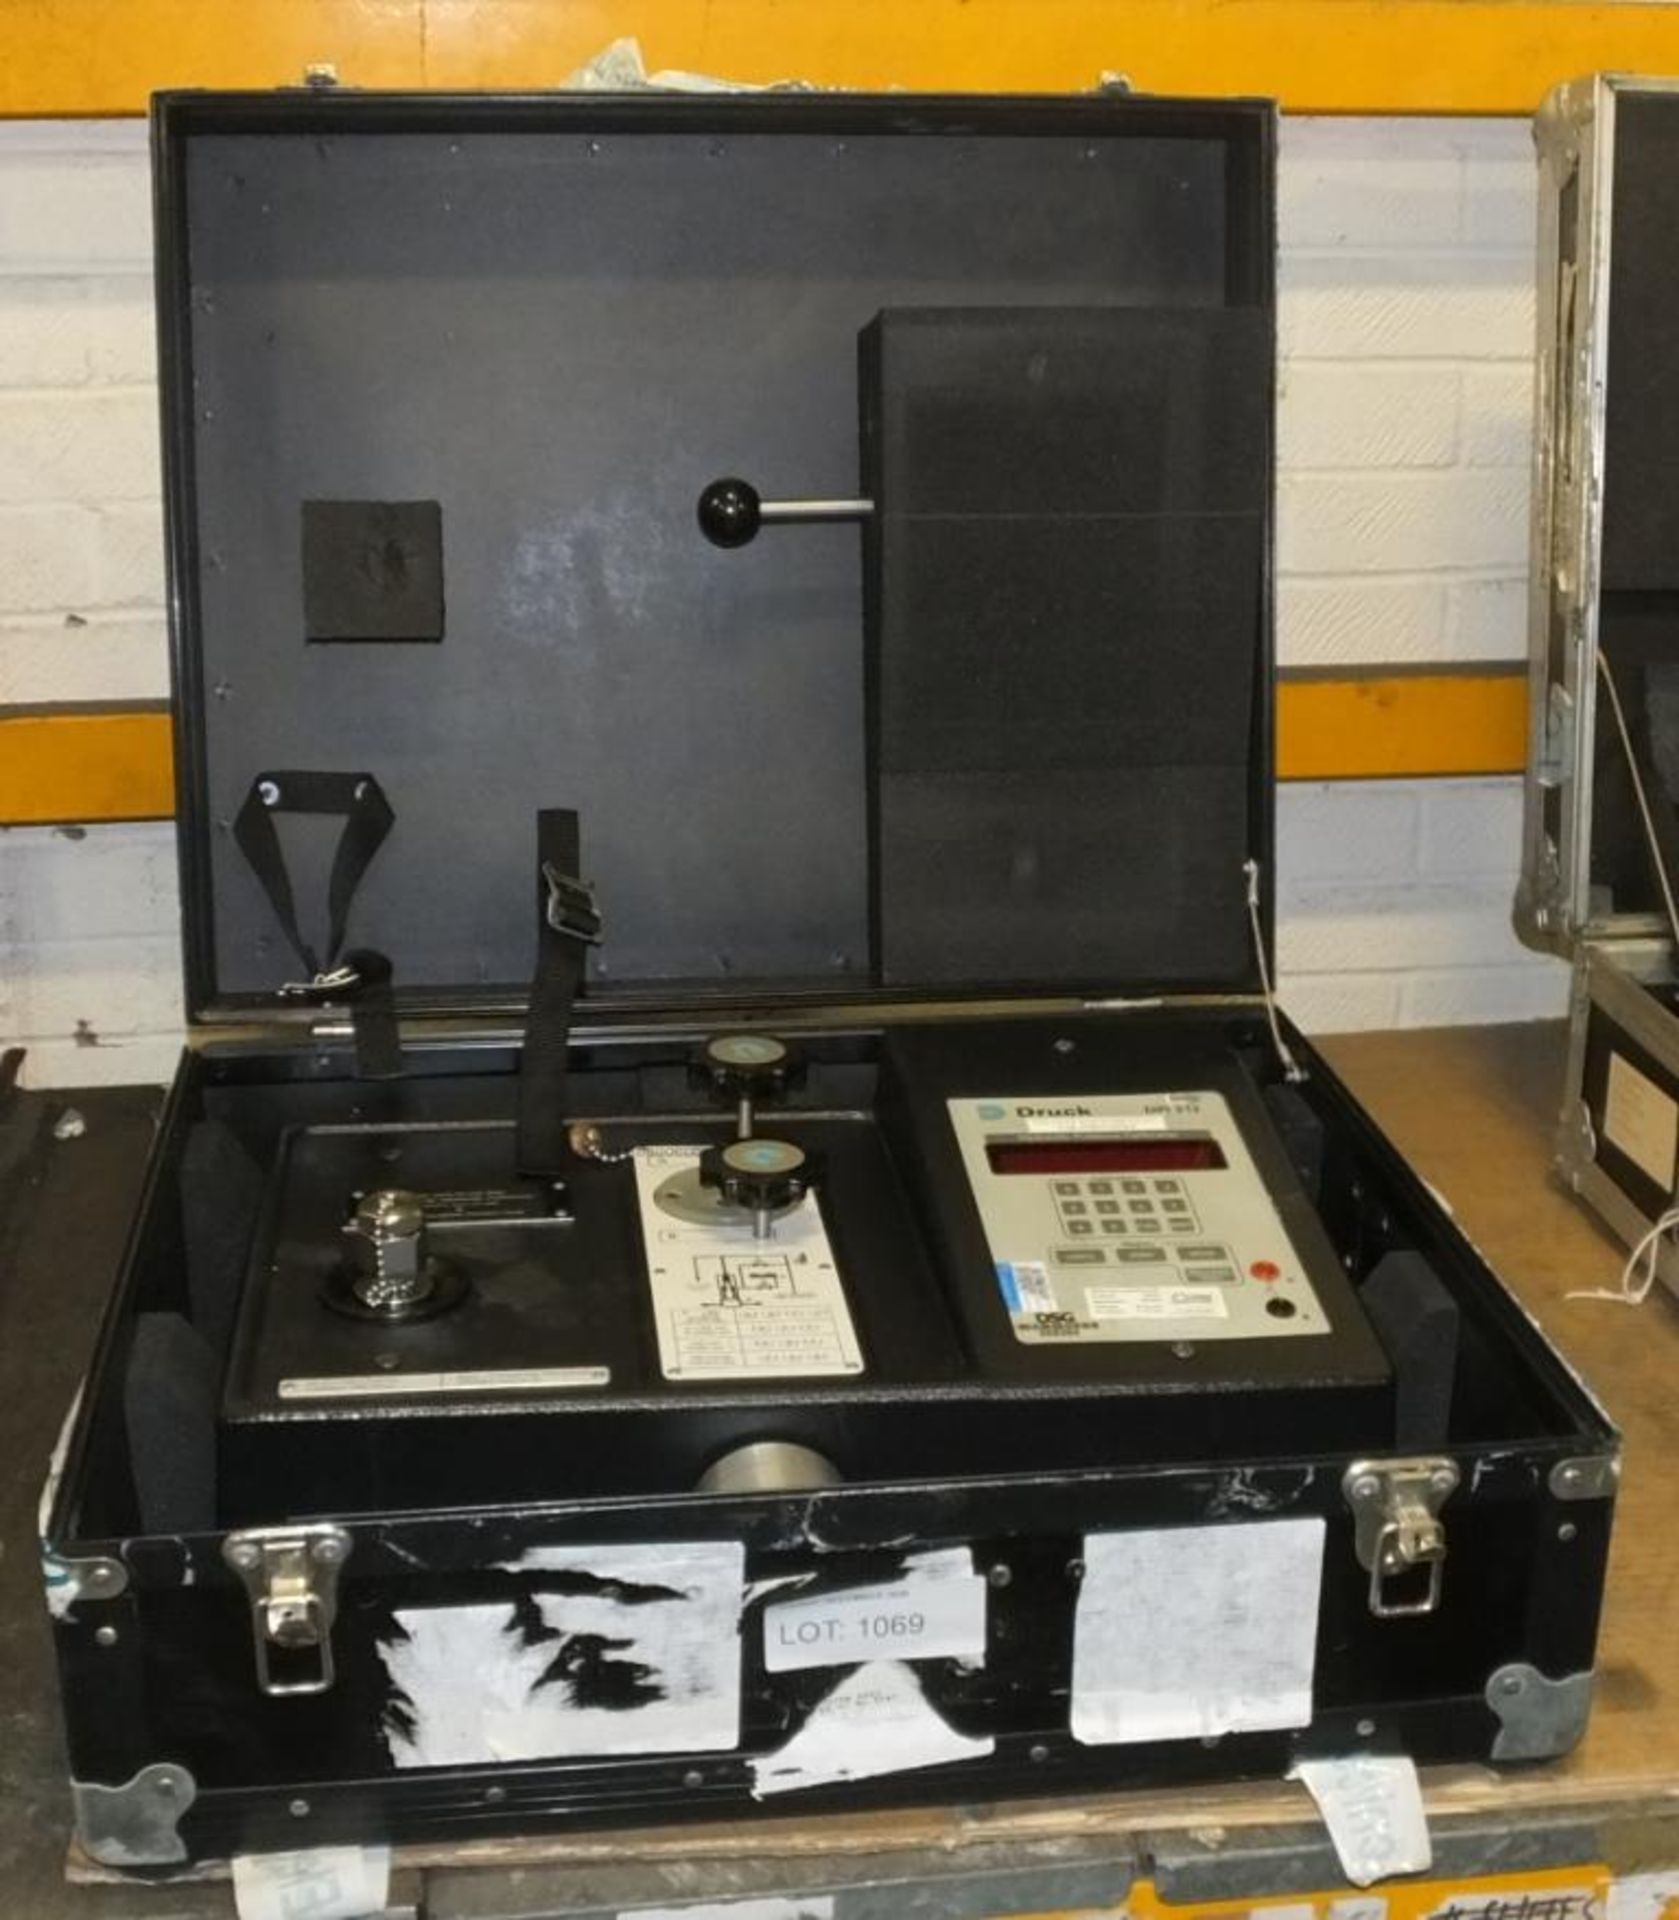 Druck DPI 312 Hydraulic Pressure Calibrator Unit In A Case